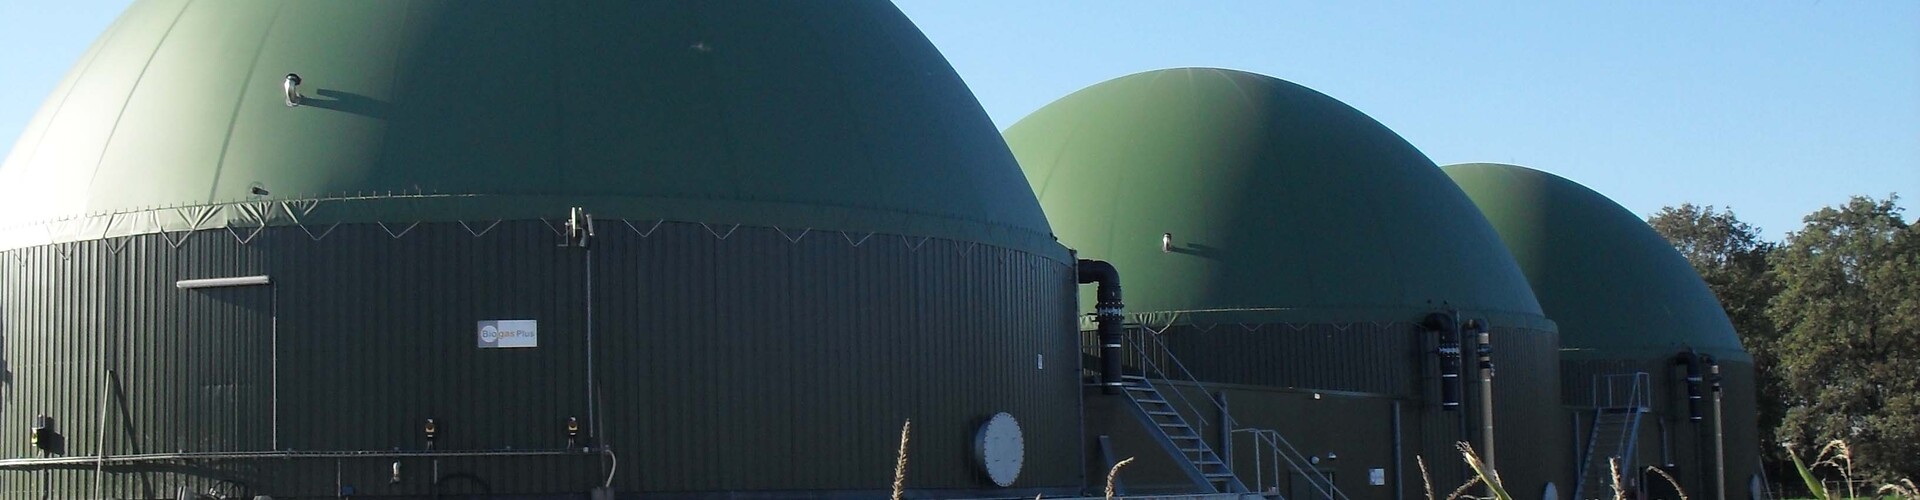 Biogas installation Lierop, the Netherlands